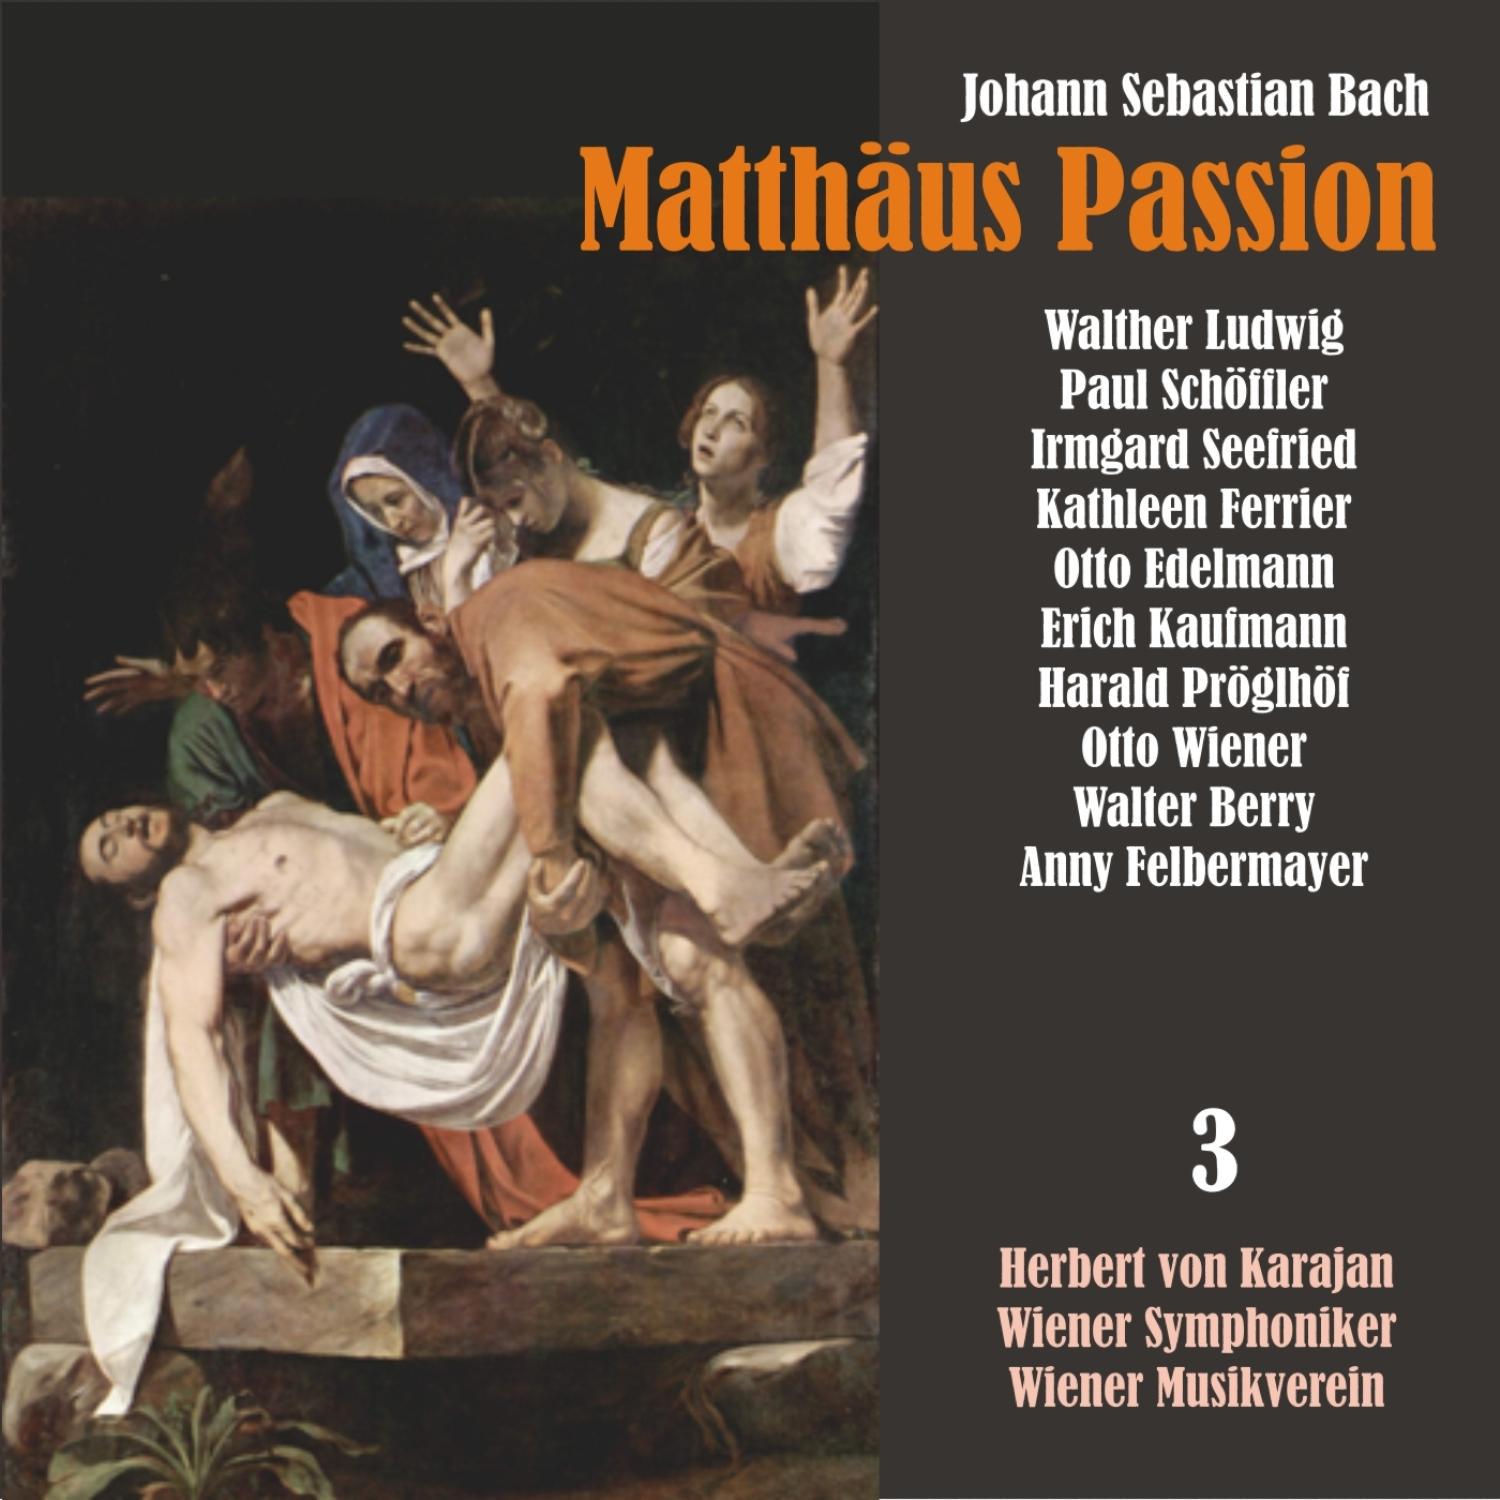 Matthäus Passion, BWV 244: "Nun ist der Herr zur Ruh gebracht "